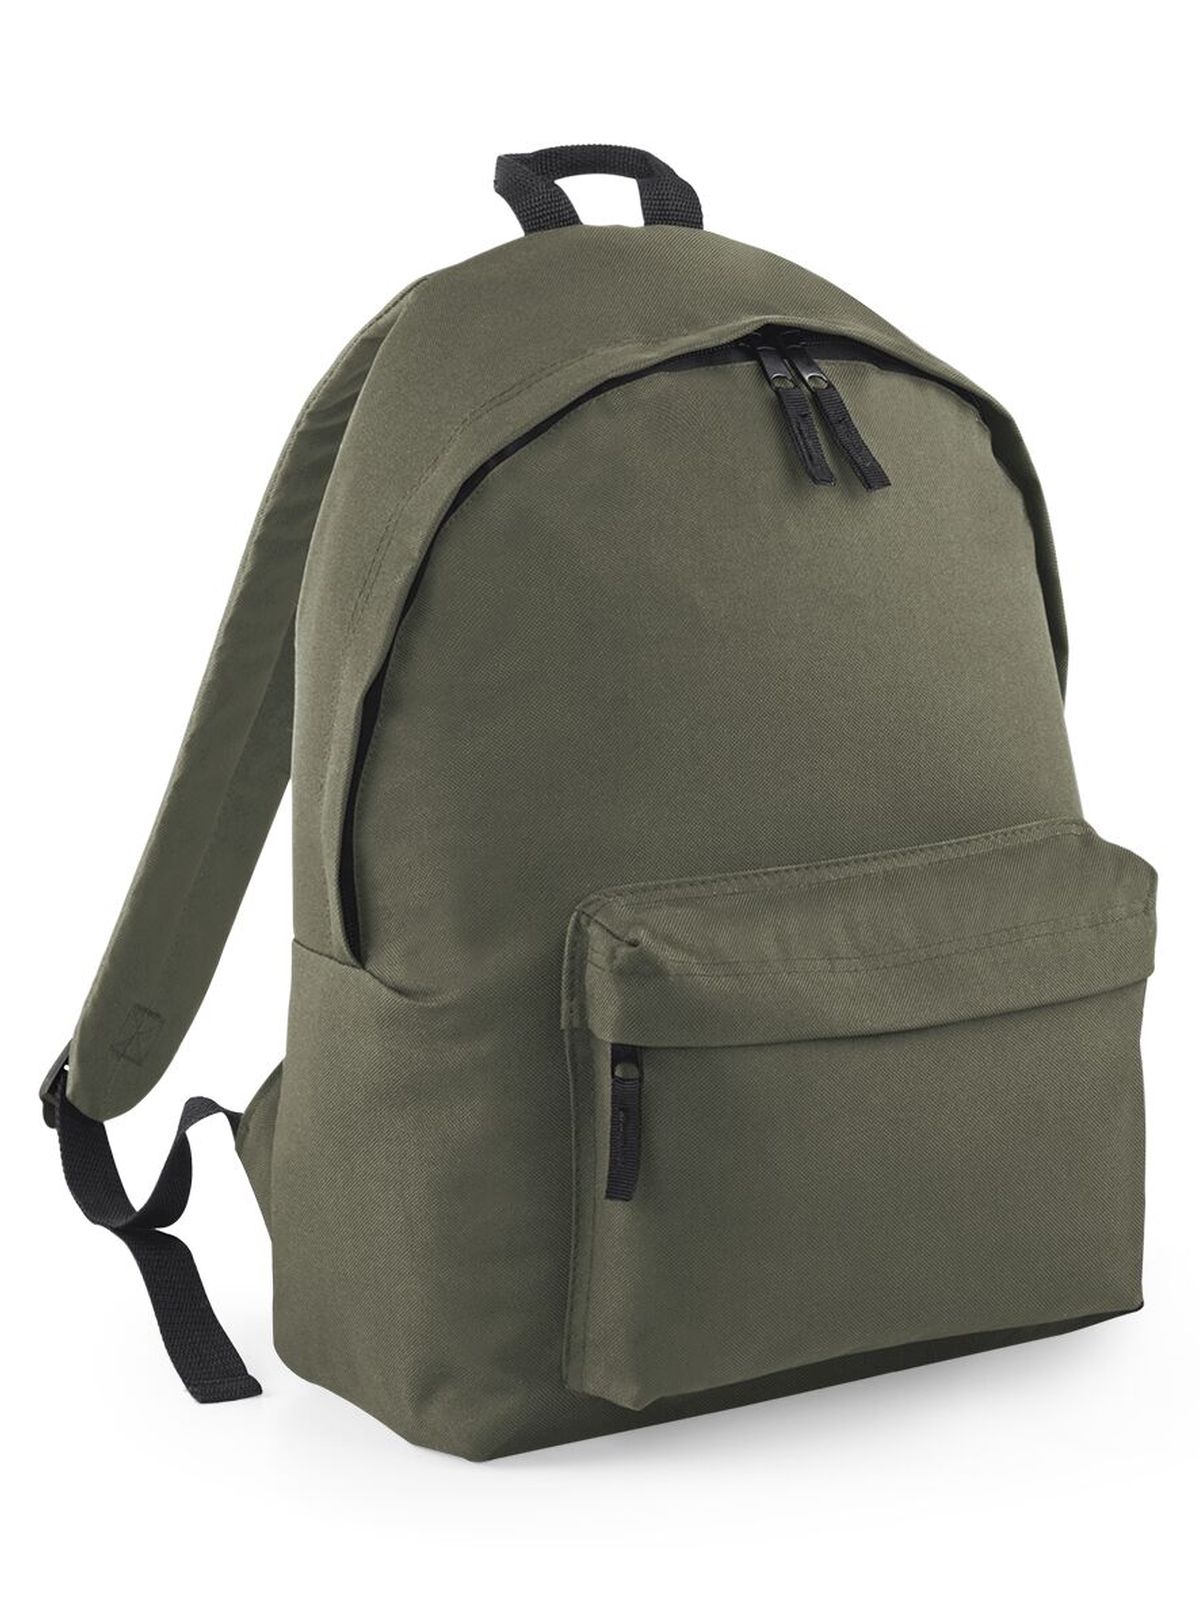 original-fashion-backpack-olive-green.webp